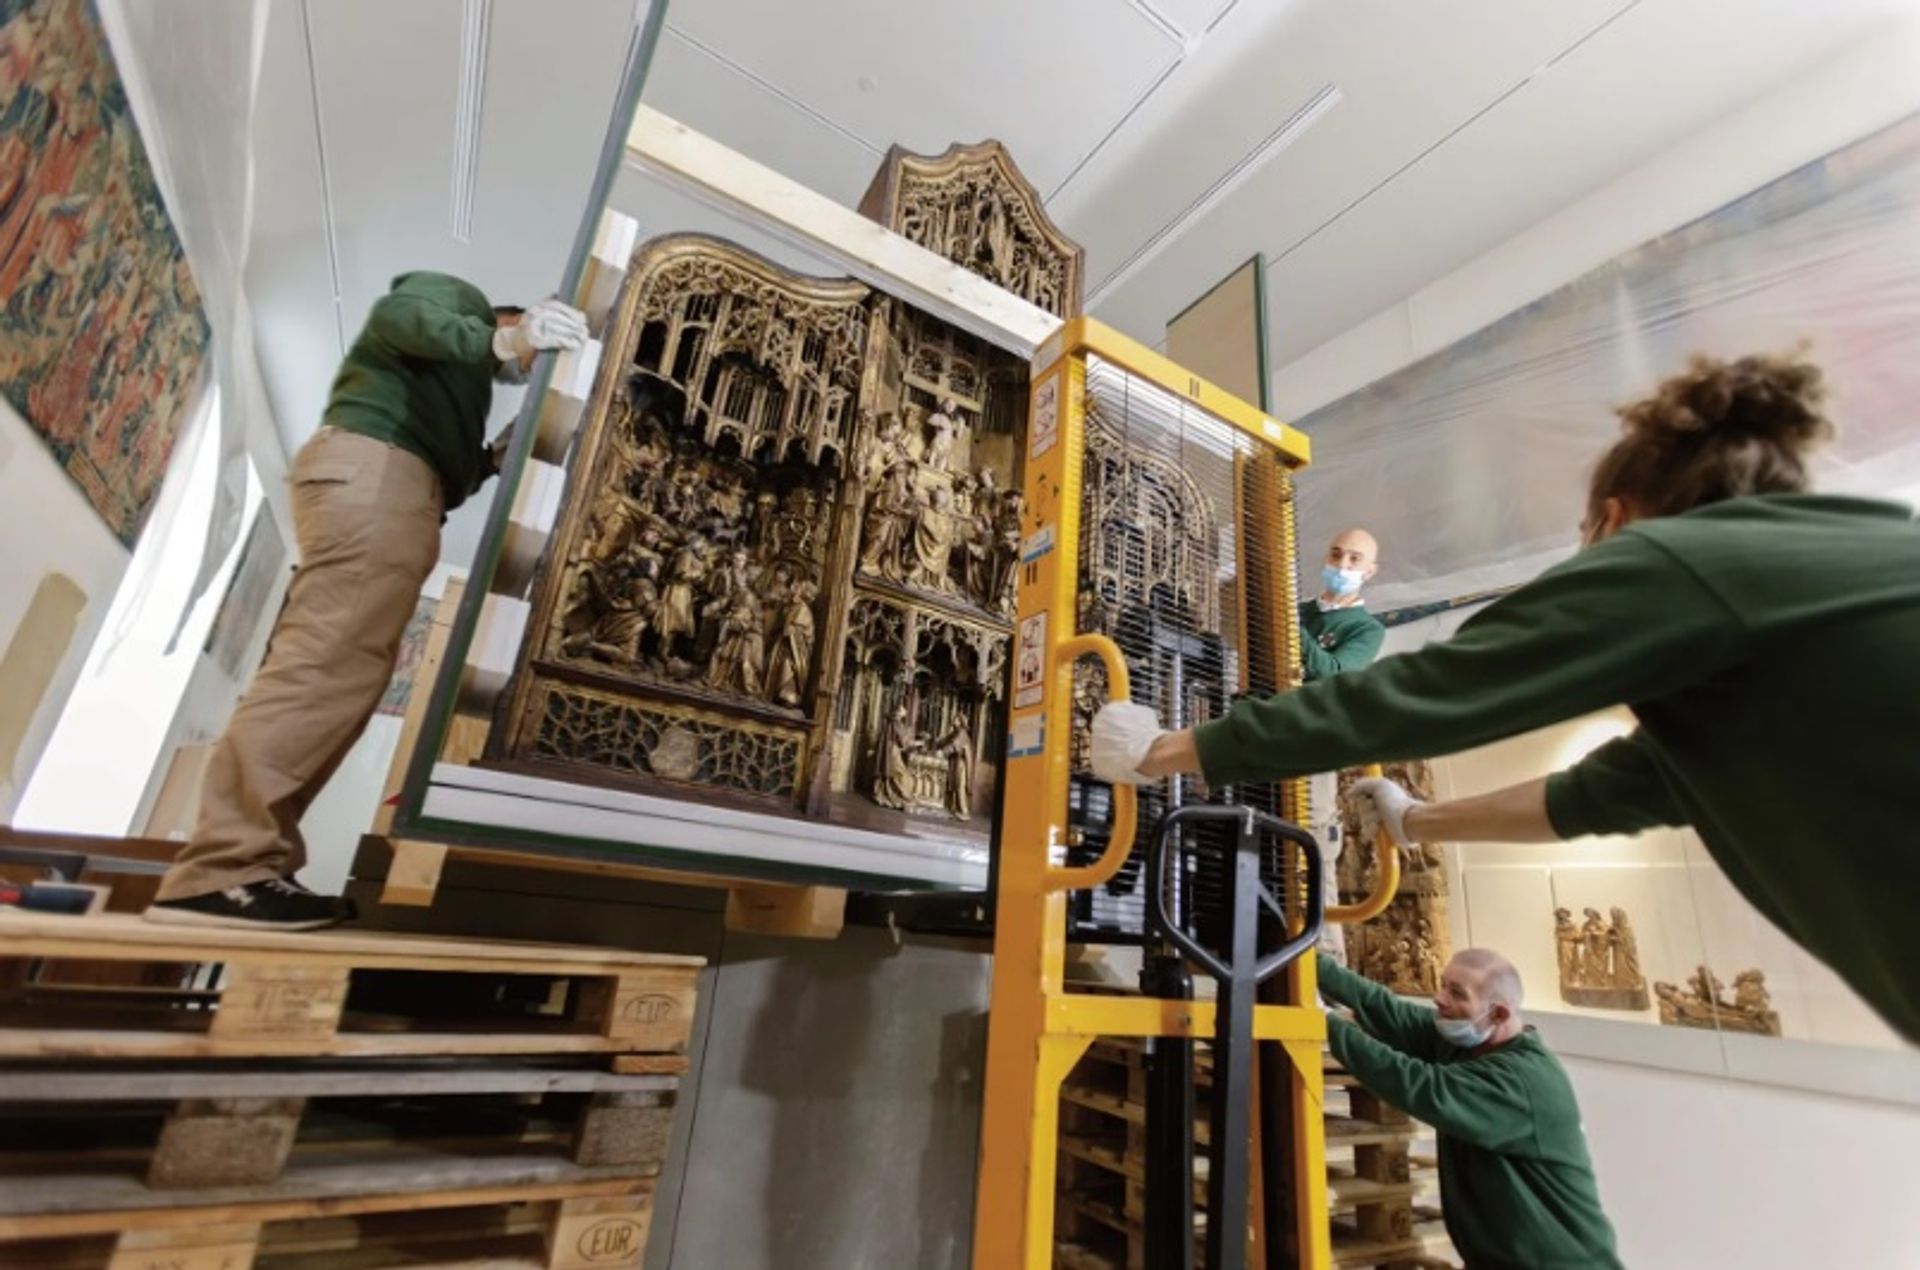 עובדי המוזיאון מעבירים יצירת מזבח למקומה באחת הגלריות ששופצו לאחרונה במוזיאון דה קלוני. כ-500 יצירות מאוסף המוזיאון שוחזרו לרגל הפתיחה המחודשת

© Michel Bourguet/Musée de Cluny